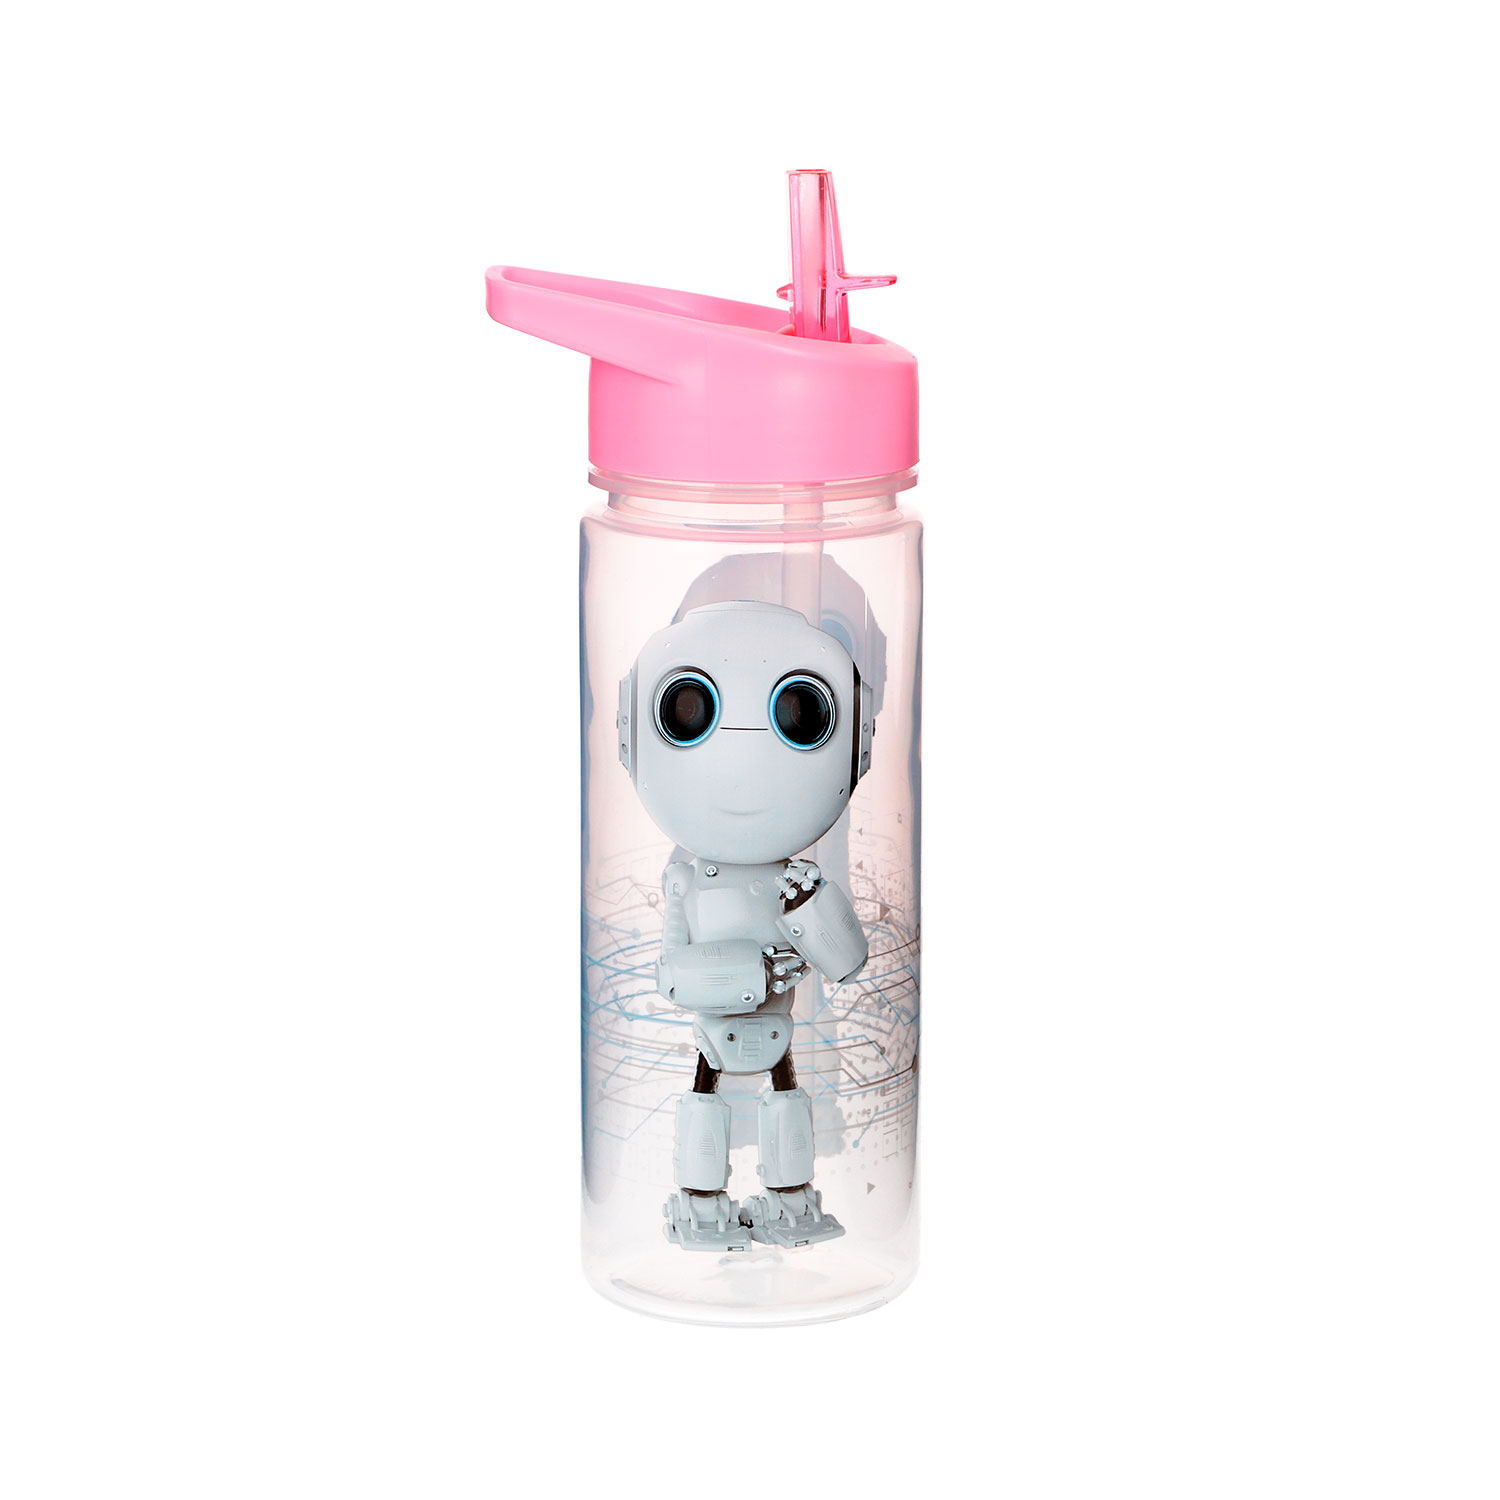 Trinkflasche mit Motiv "Robbie Roboter", Kinderflasche, für Freizeit und Schule, rosa